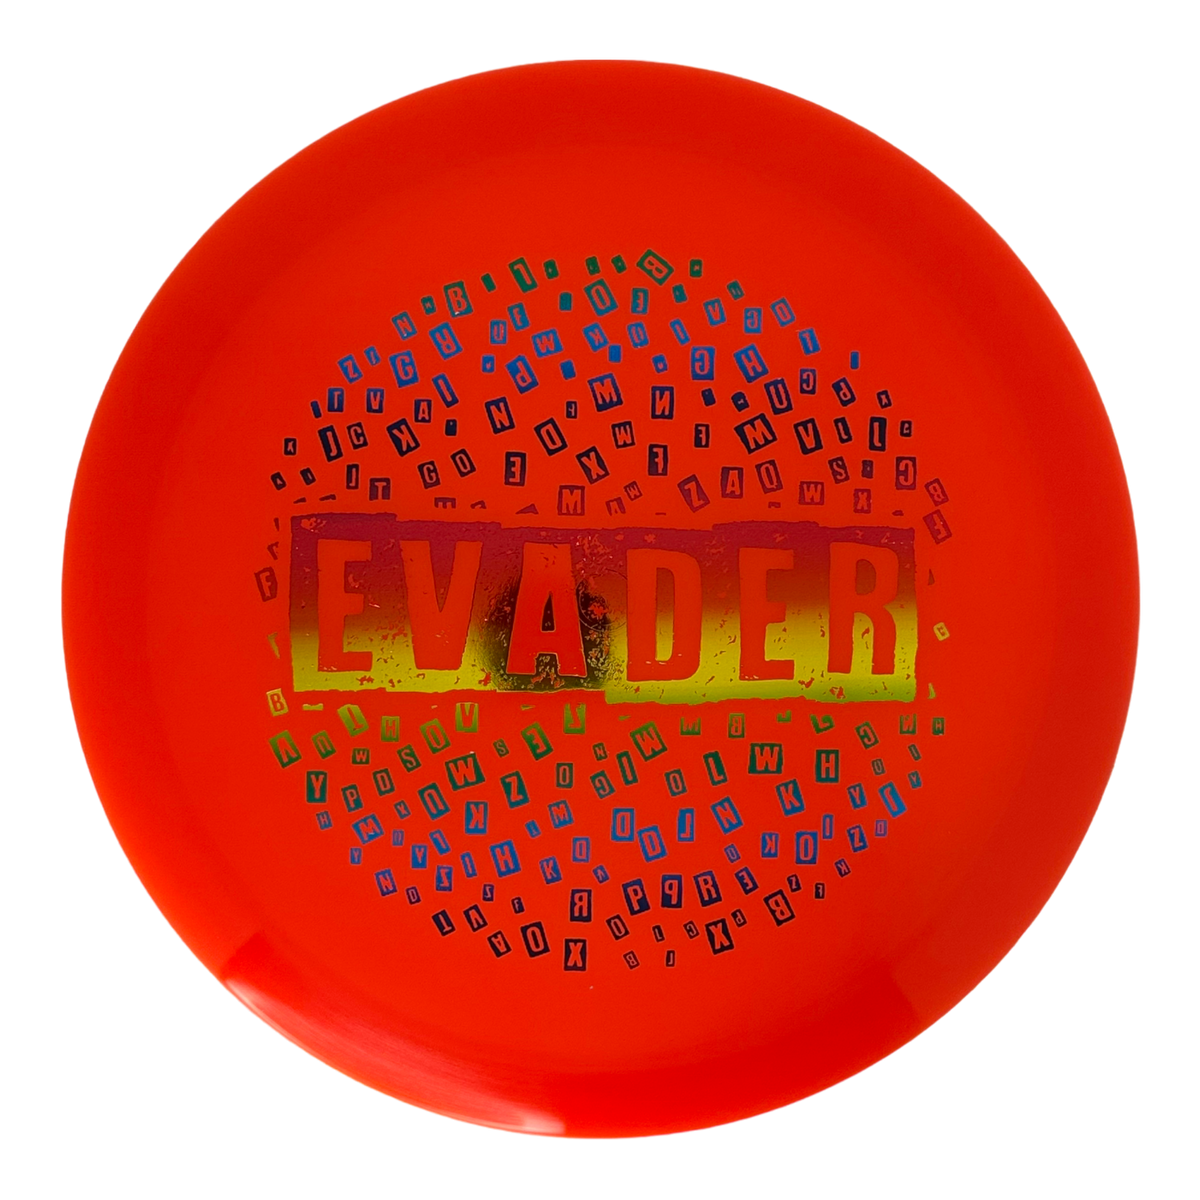 Dynamic Discs Lucid Evader - Ransom Stamp